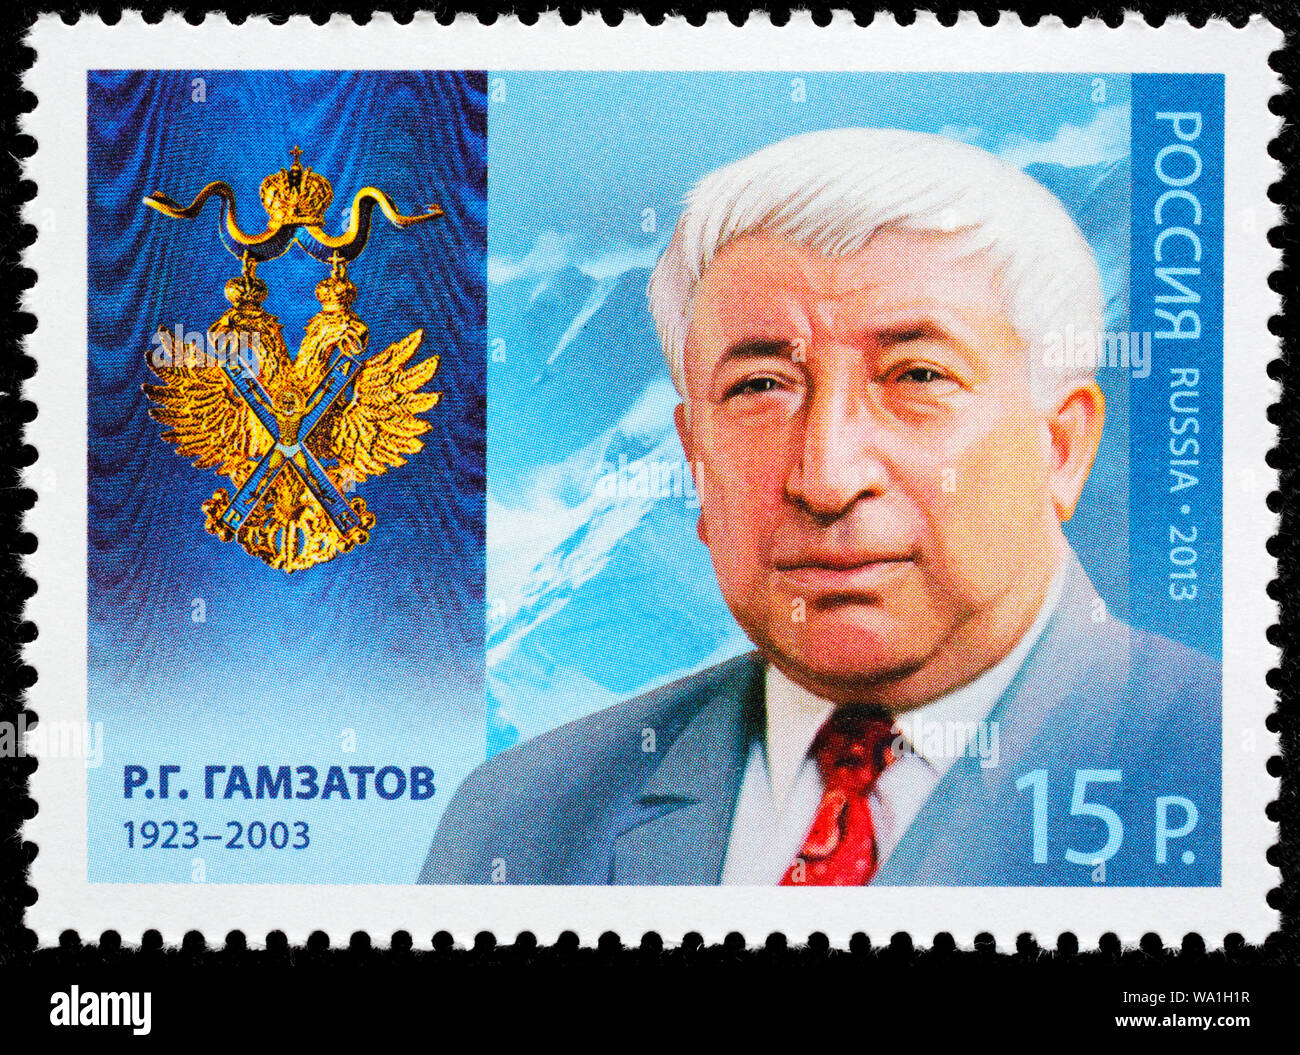 Il Rasul Gamzatov (1923-2003), il famoso poeta Avar, cavaliere dell'Ordine di Sant'Andrea, francobollo, Russia, URSS, 2011 Foto Stock